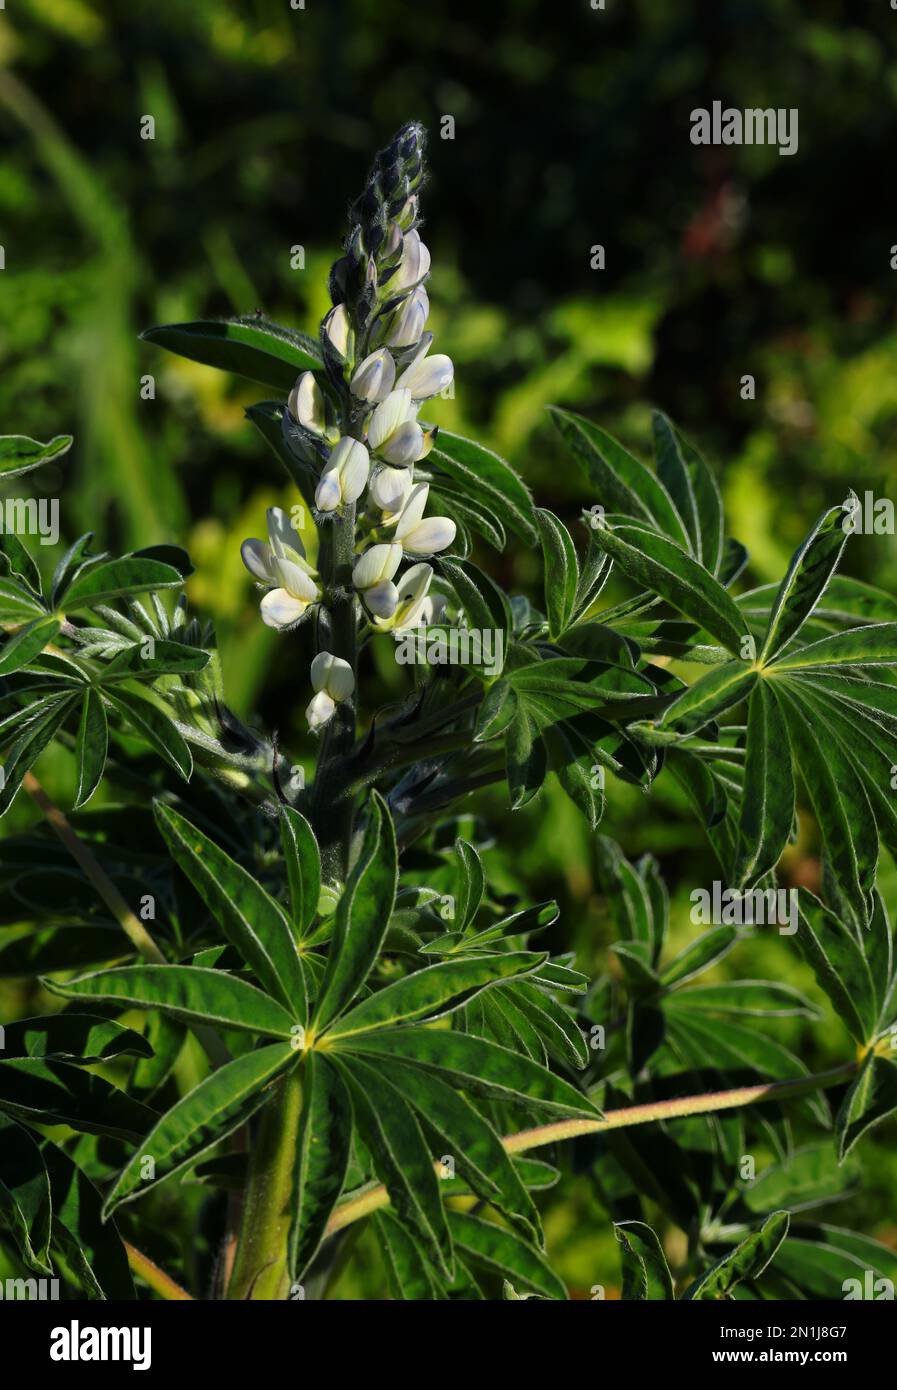 Plante et fleur de lupin blanc sauvage nouvellement fleuri - Lupinus albus. Famille des Fabaceae. Oeiras, Portugal. Légumineuses - les haricots sont consommés comme aperitif. Banque D'Images